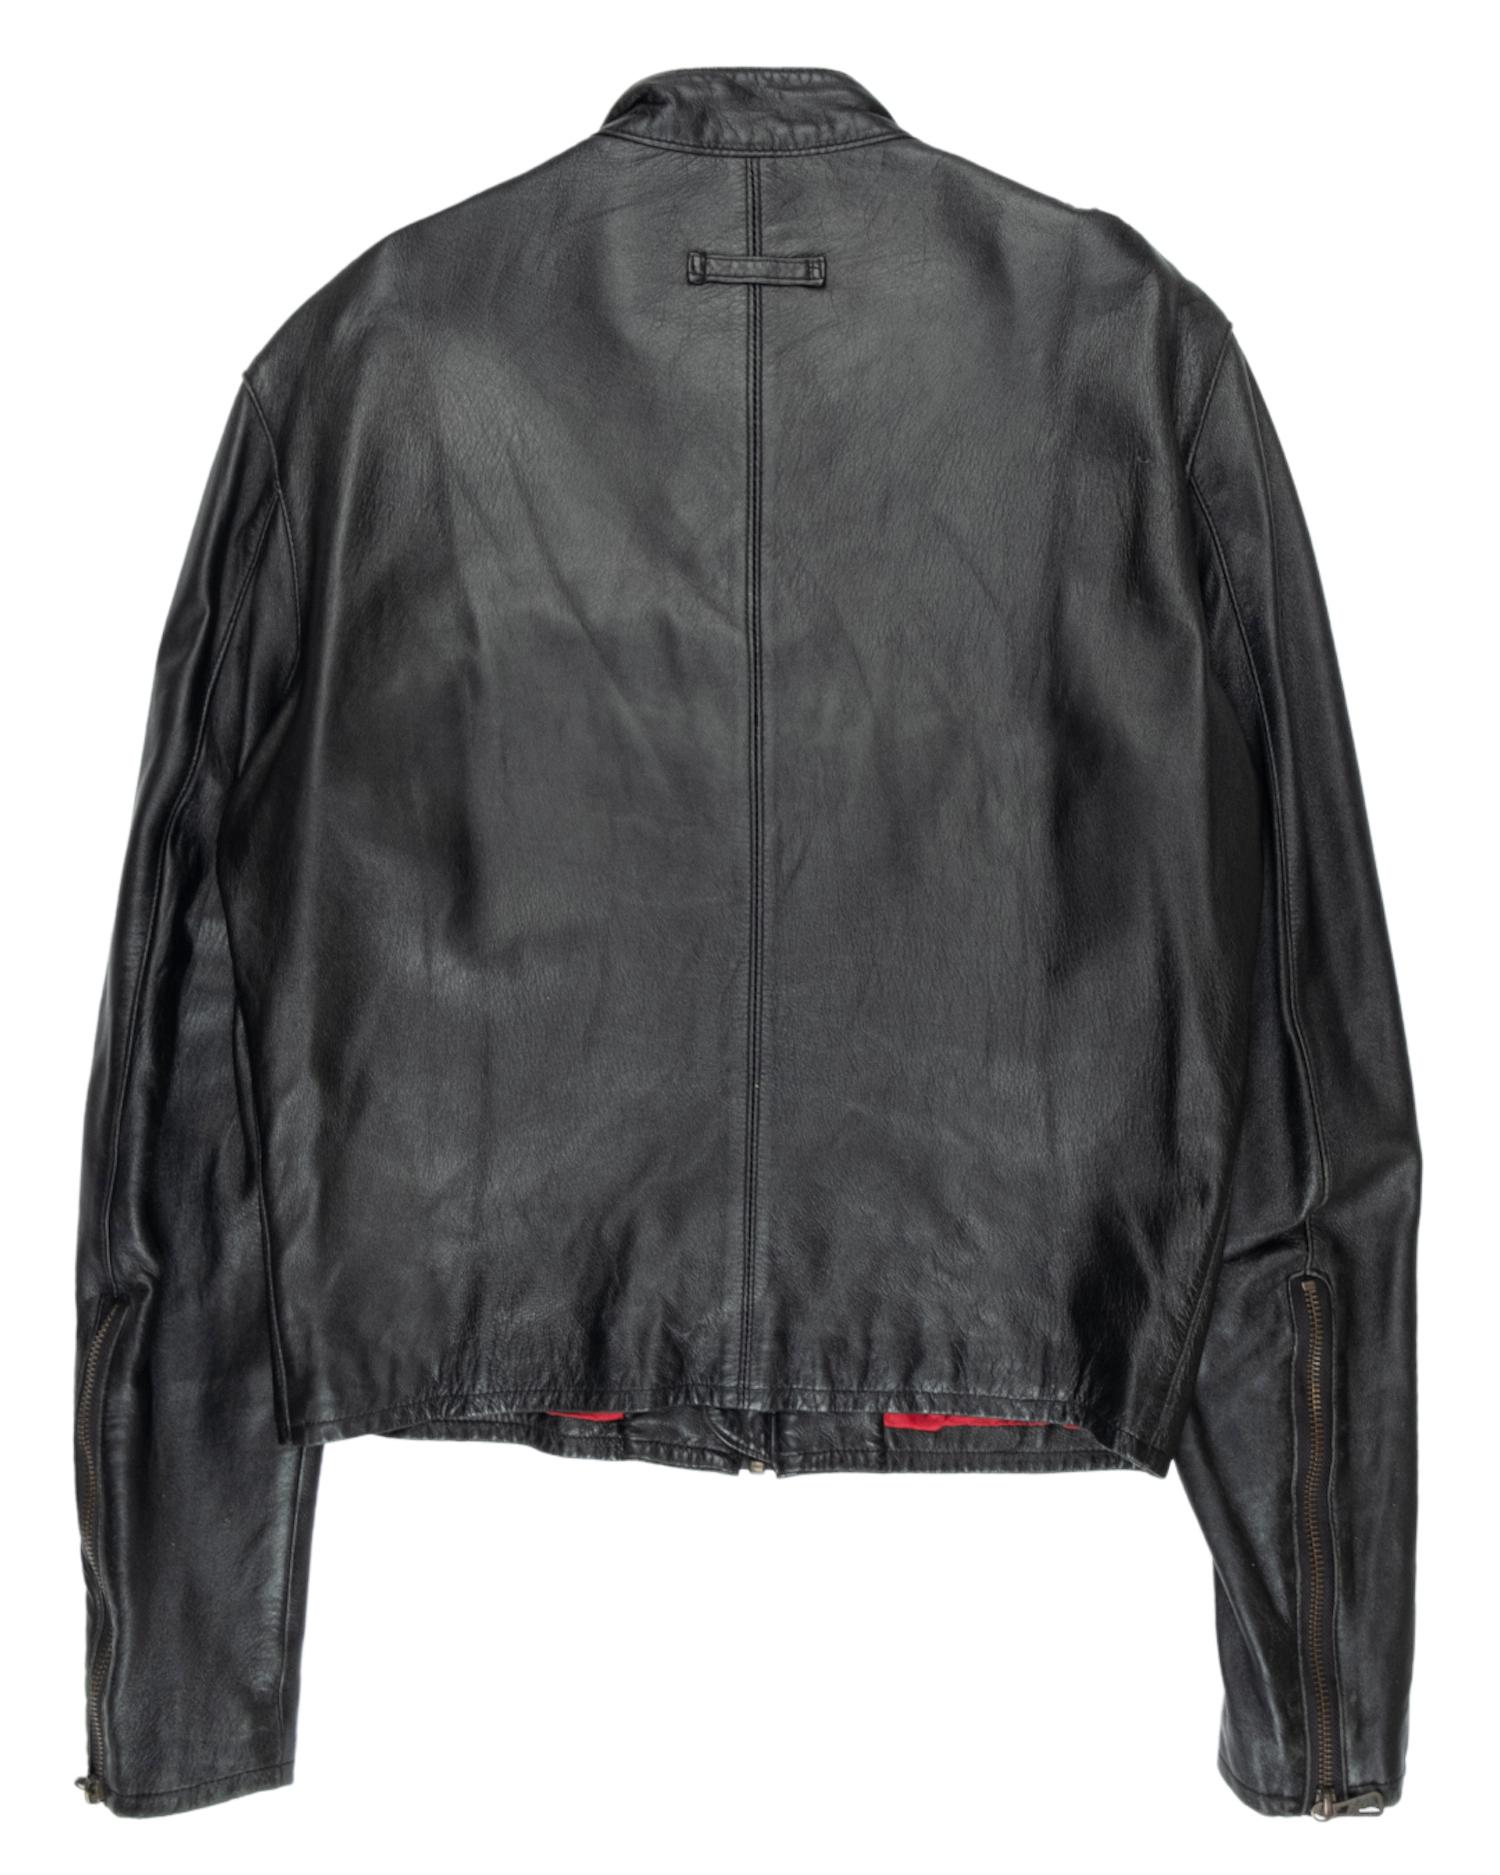 Men's Jean Paul Gaultier AW1999 Moto Leather Jacket